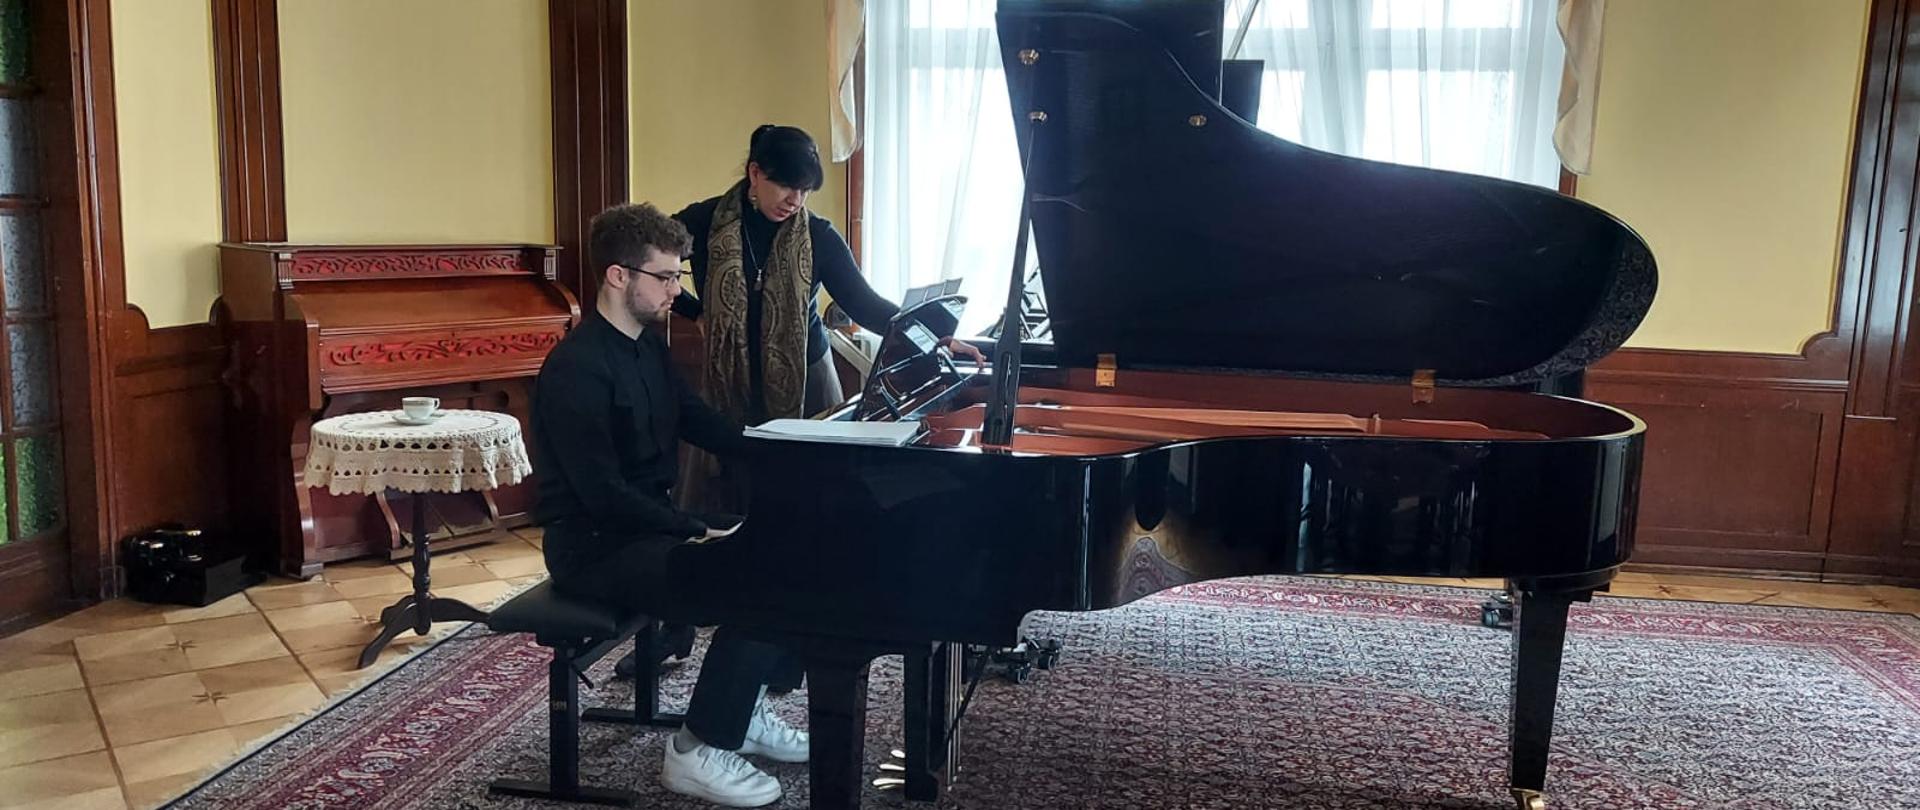 Zdjęcie kolorowe. Uczeń w czarnym stroju przy fortepianie z prof. J. Marcinkowską gra. 